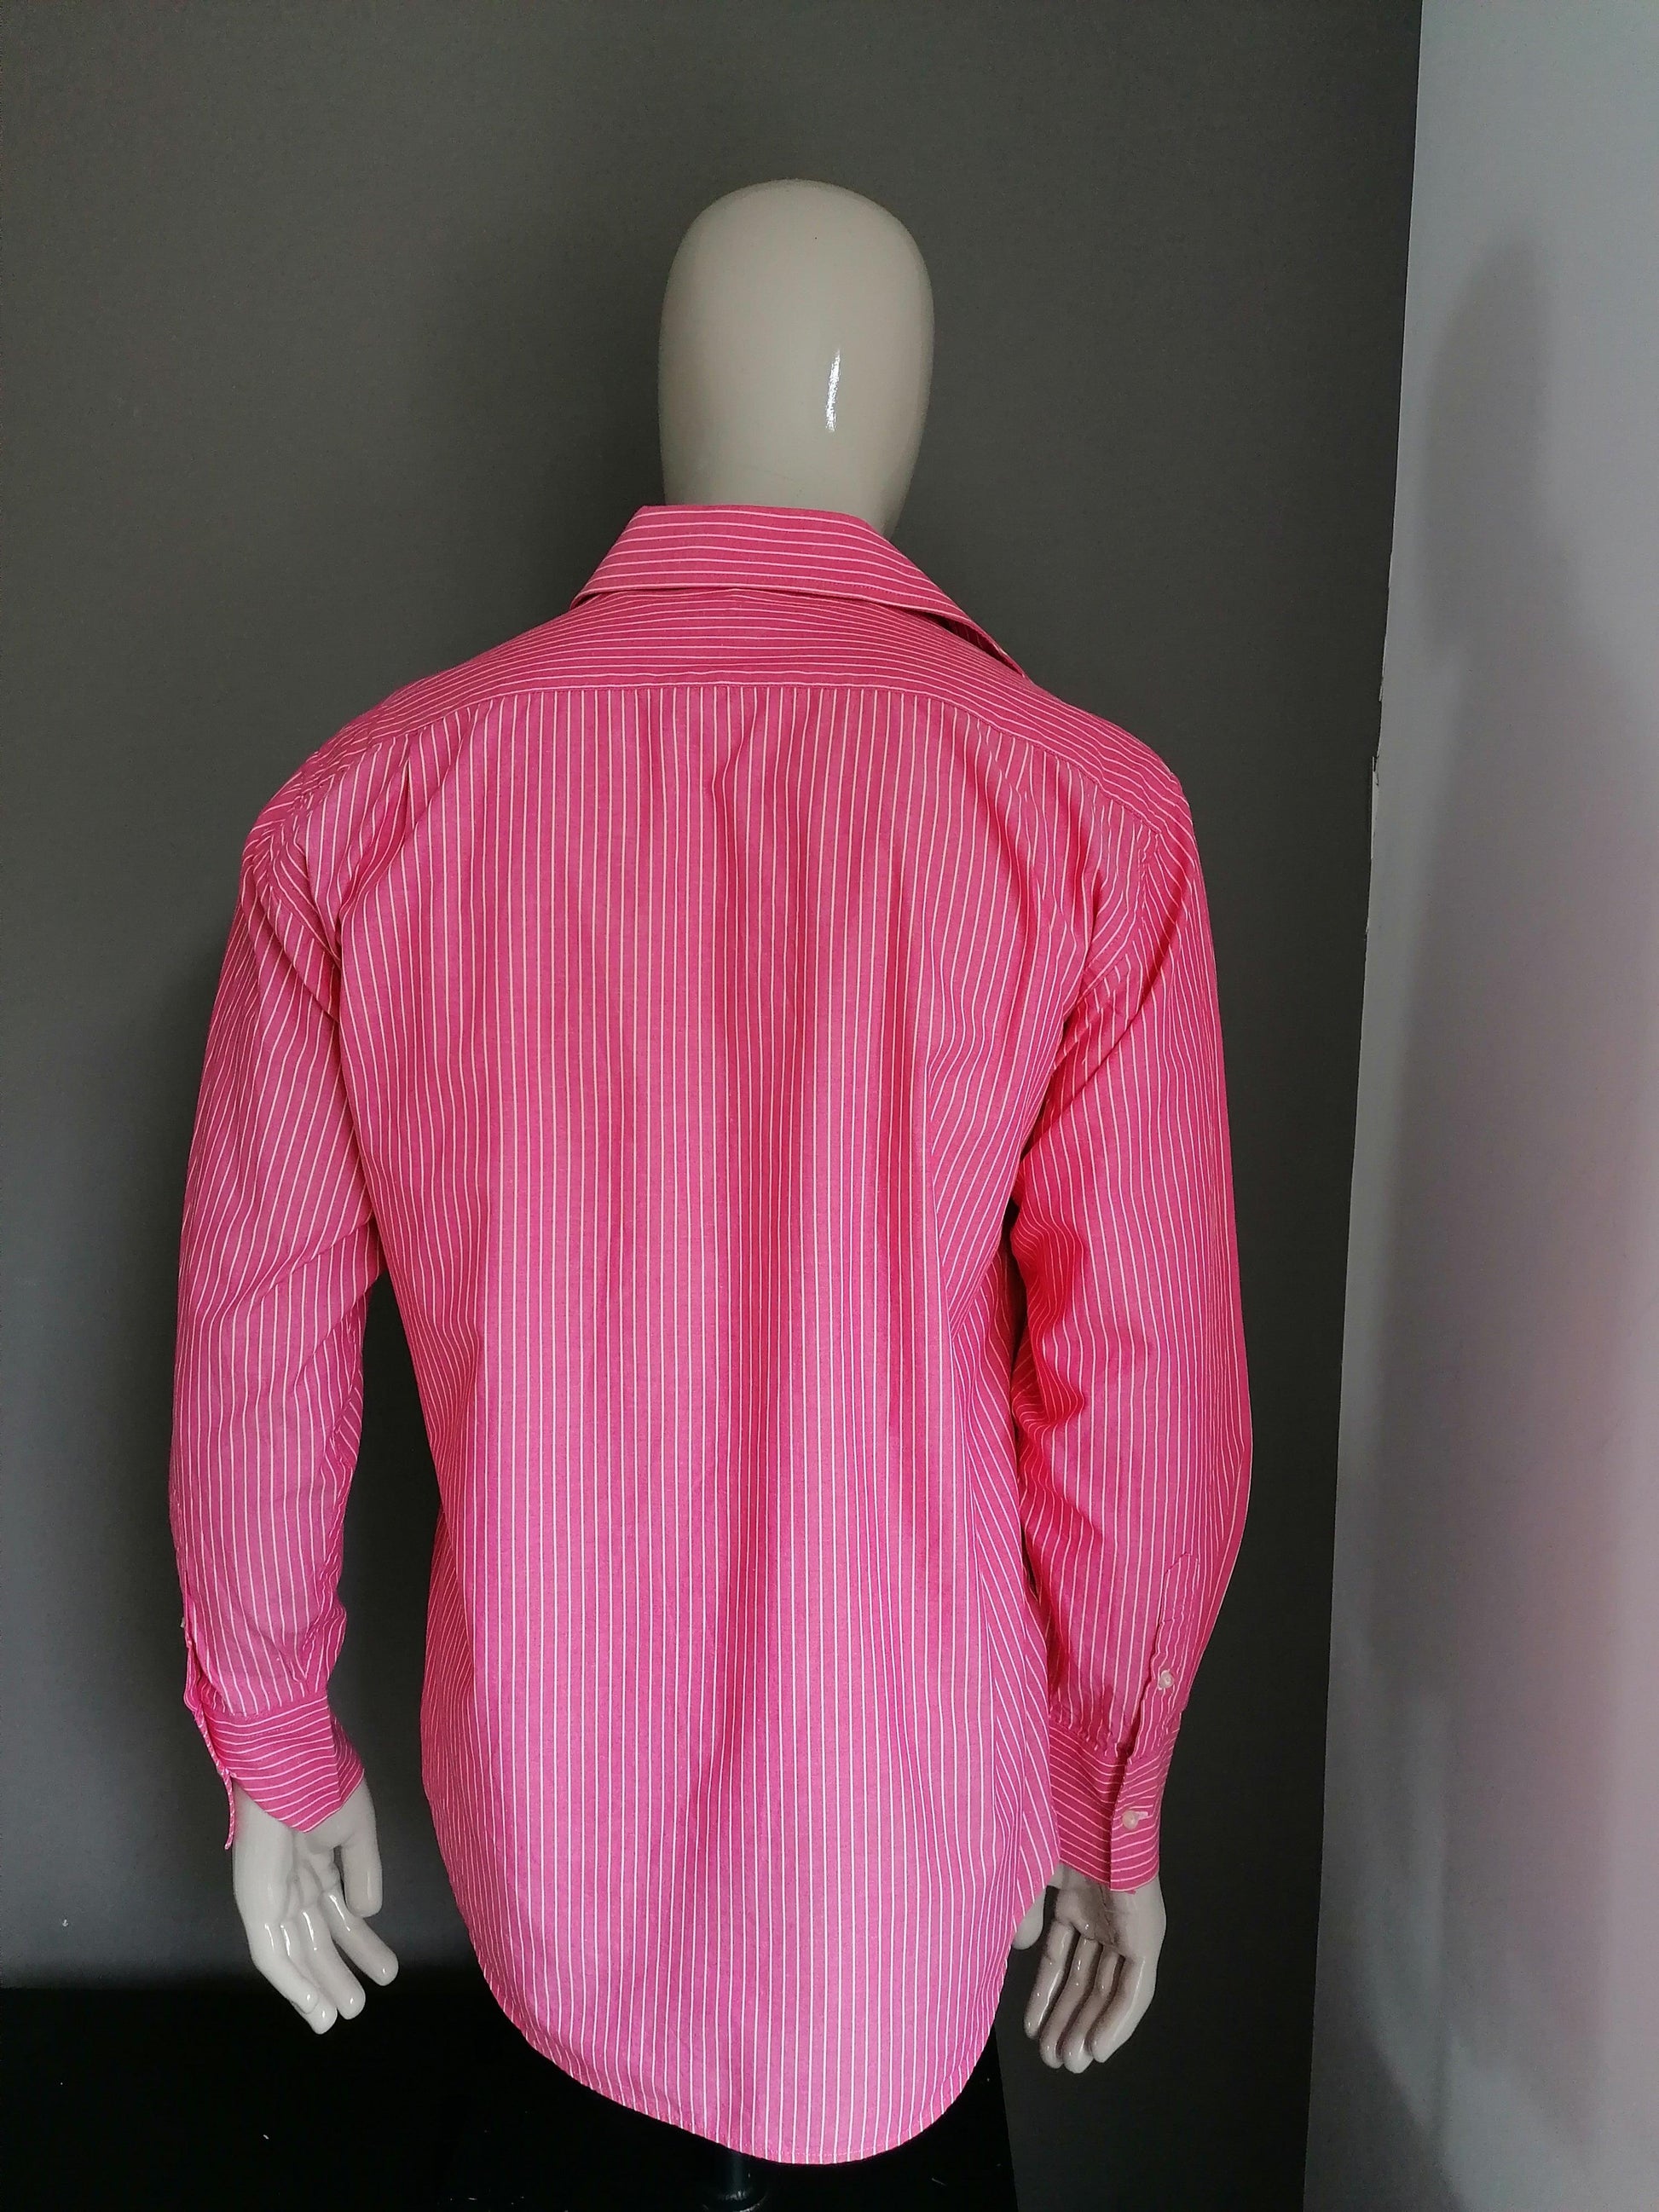 Coton Doux overhemd. Roze Geel gestreept. Maat 42 / L - EcoGents